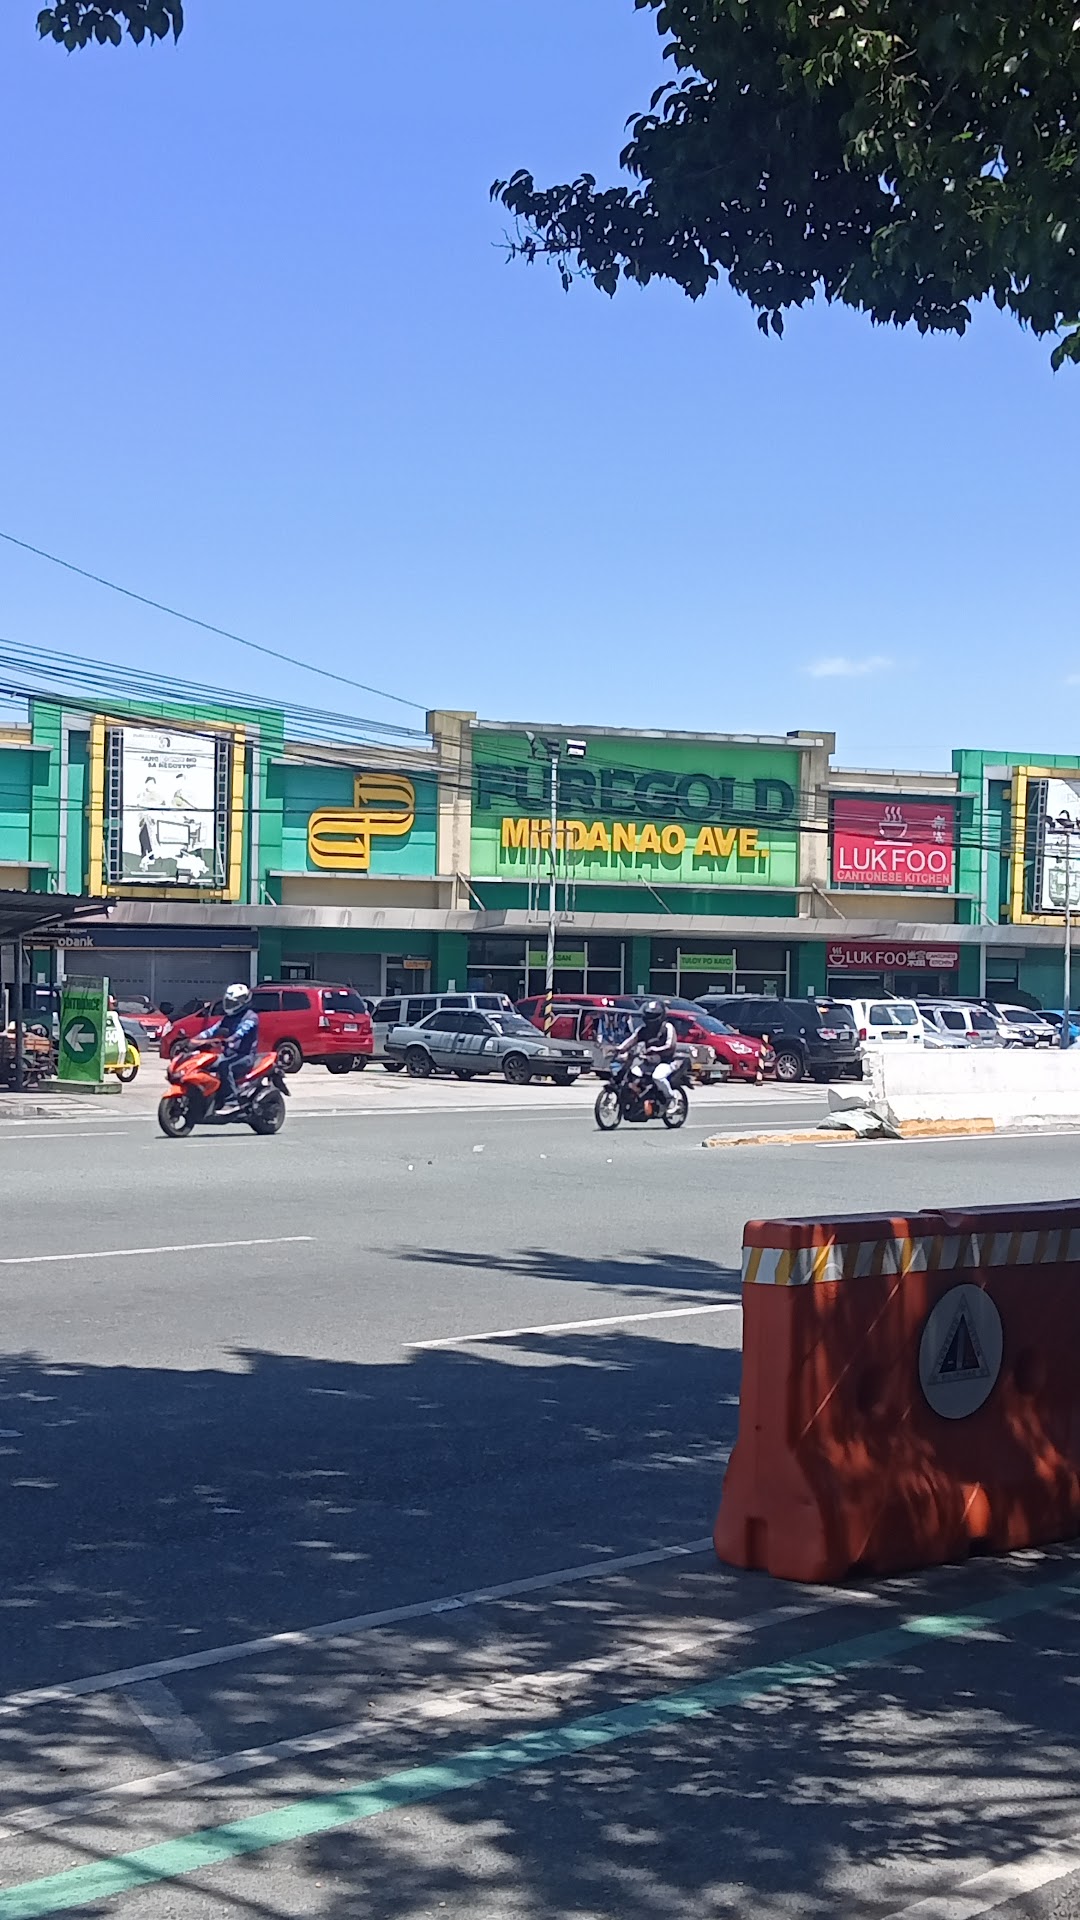 Puregold Mindanao Ave.